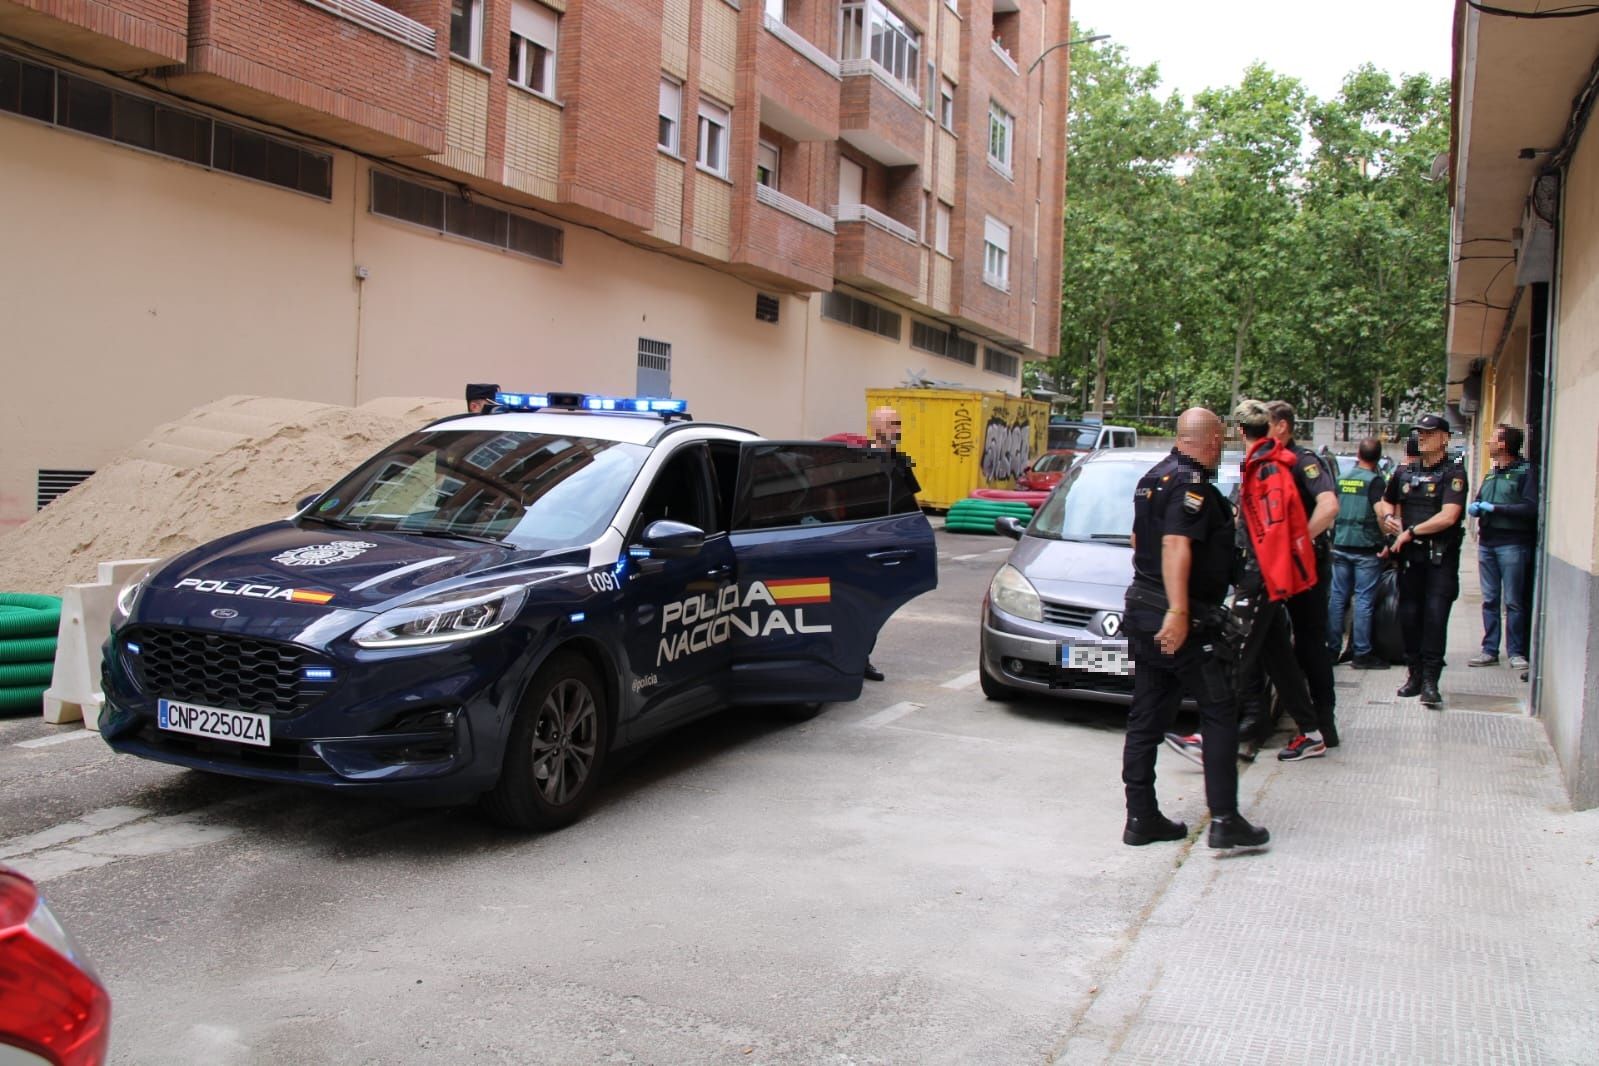 Policia Nacional inspeccionando una vivienda en la calle Perú (9)